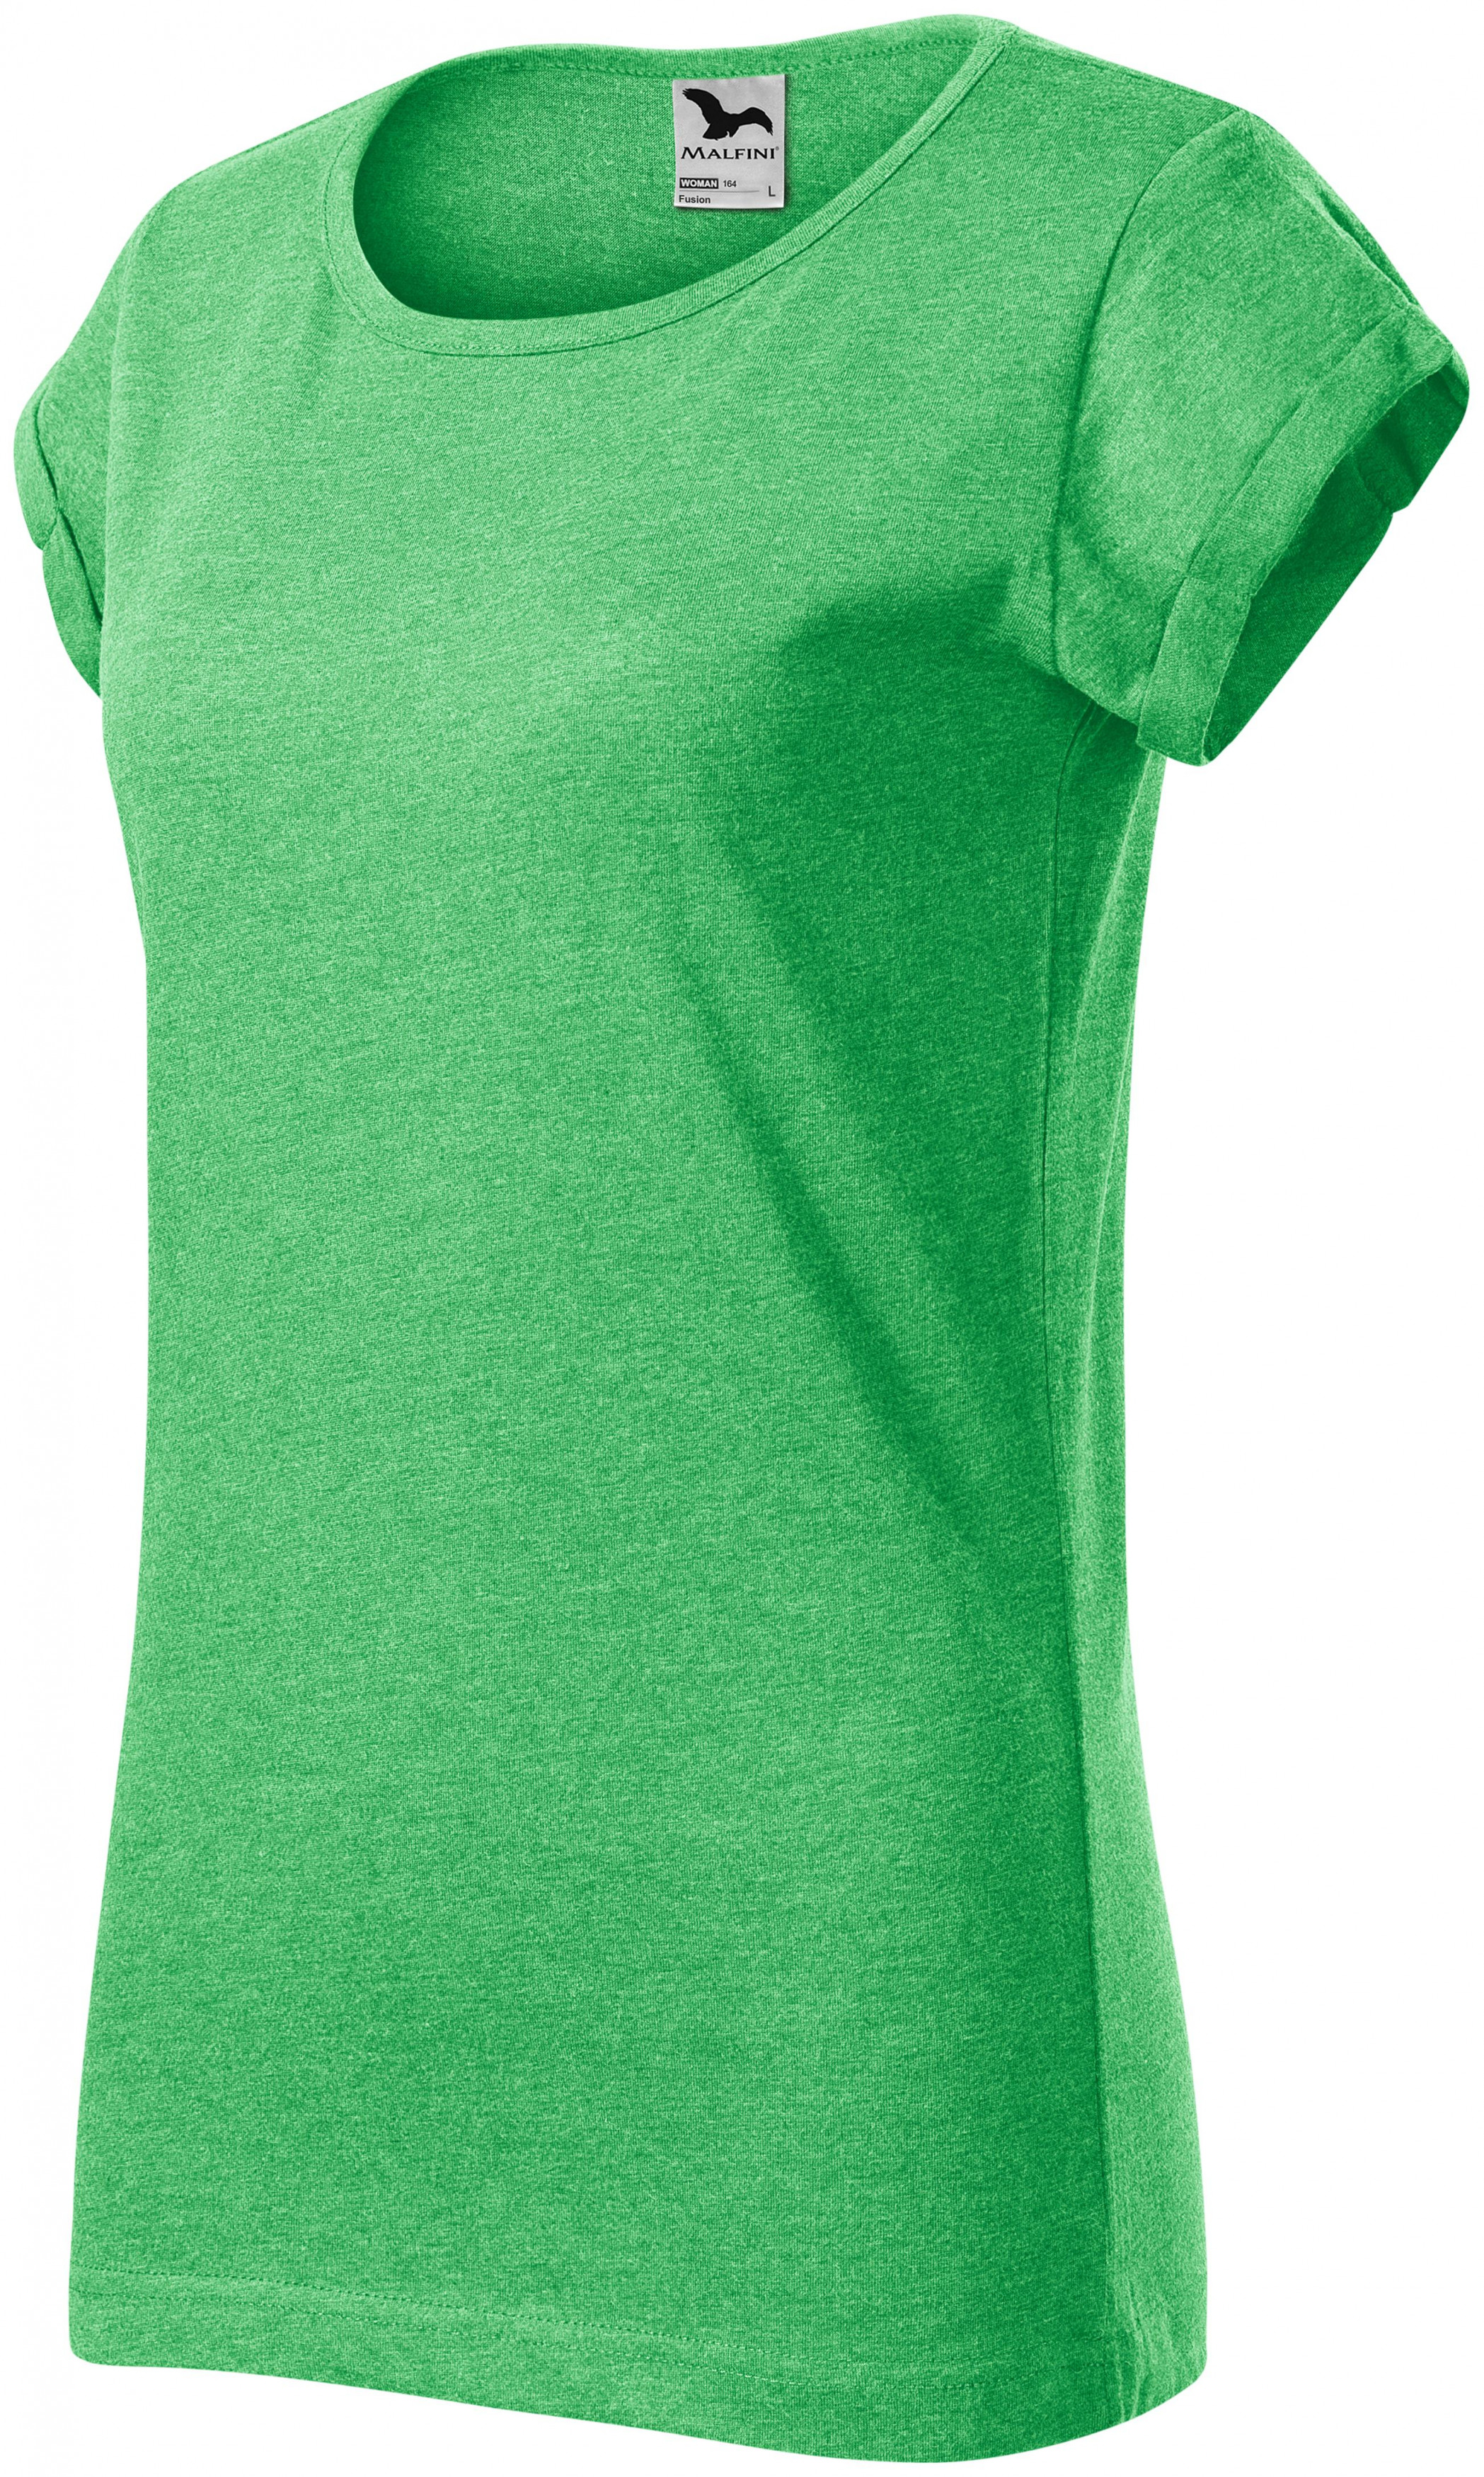 Dámske tričko s vyhrnutými rukávmi, zelený melír, XL